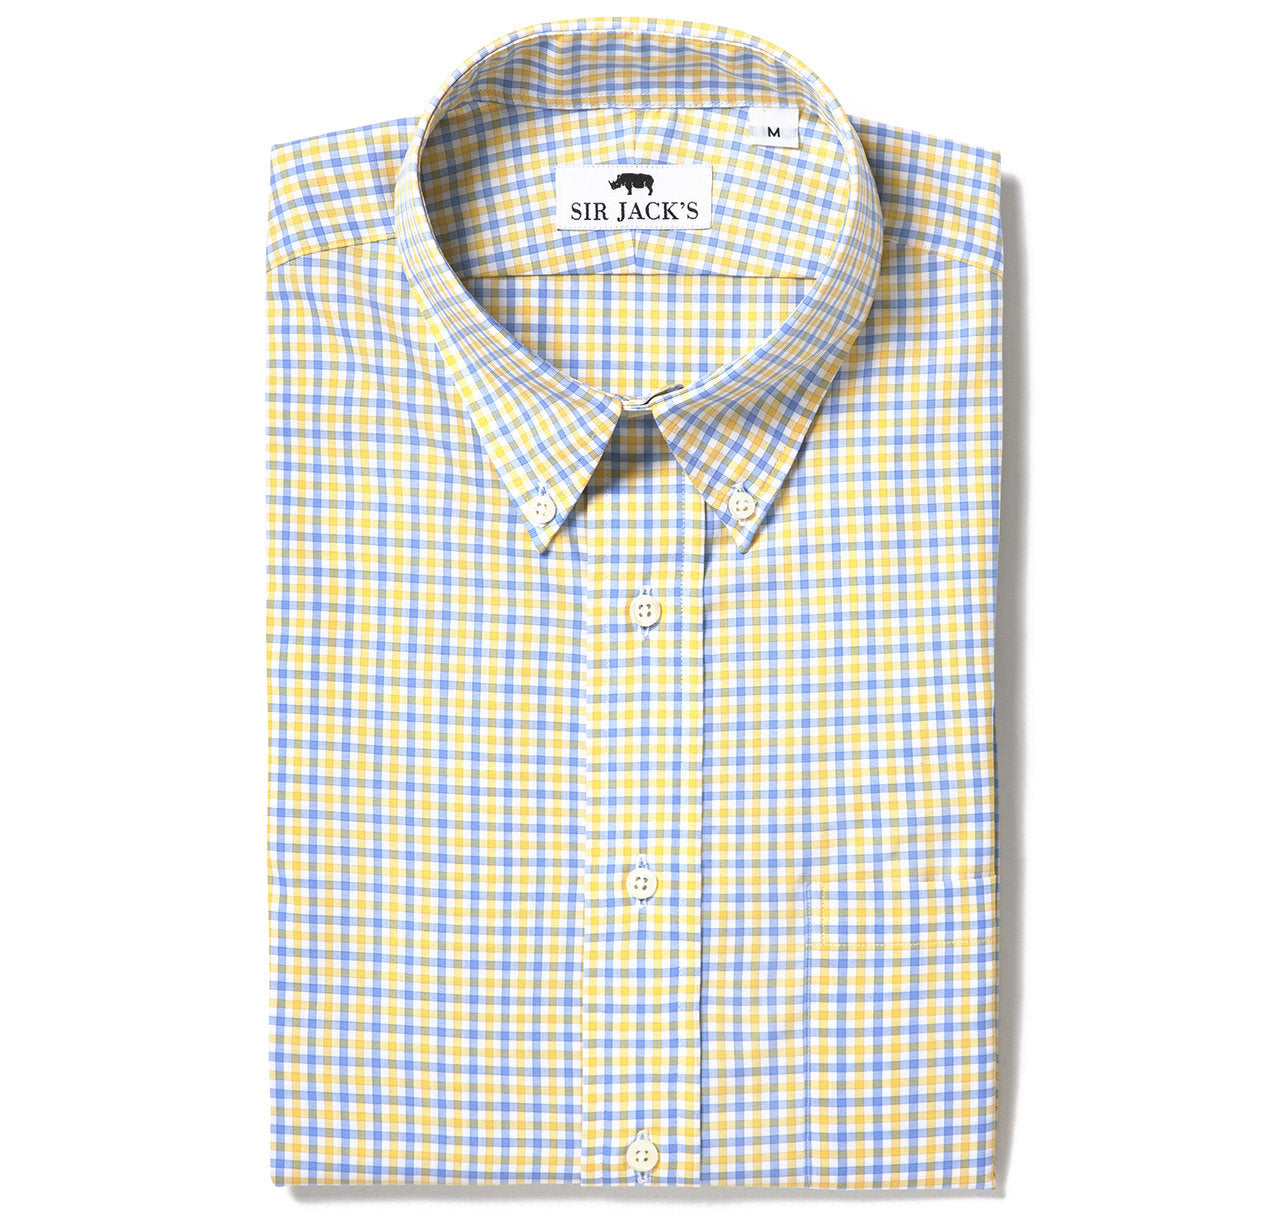 Sudbury Gingham Shirt in Yellow & Blue Check